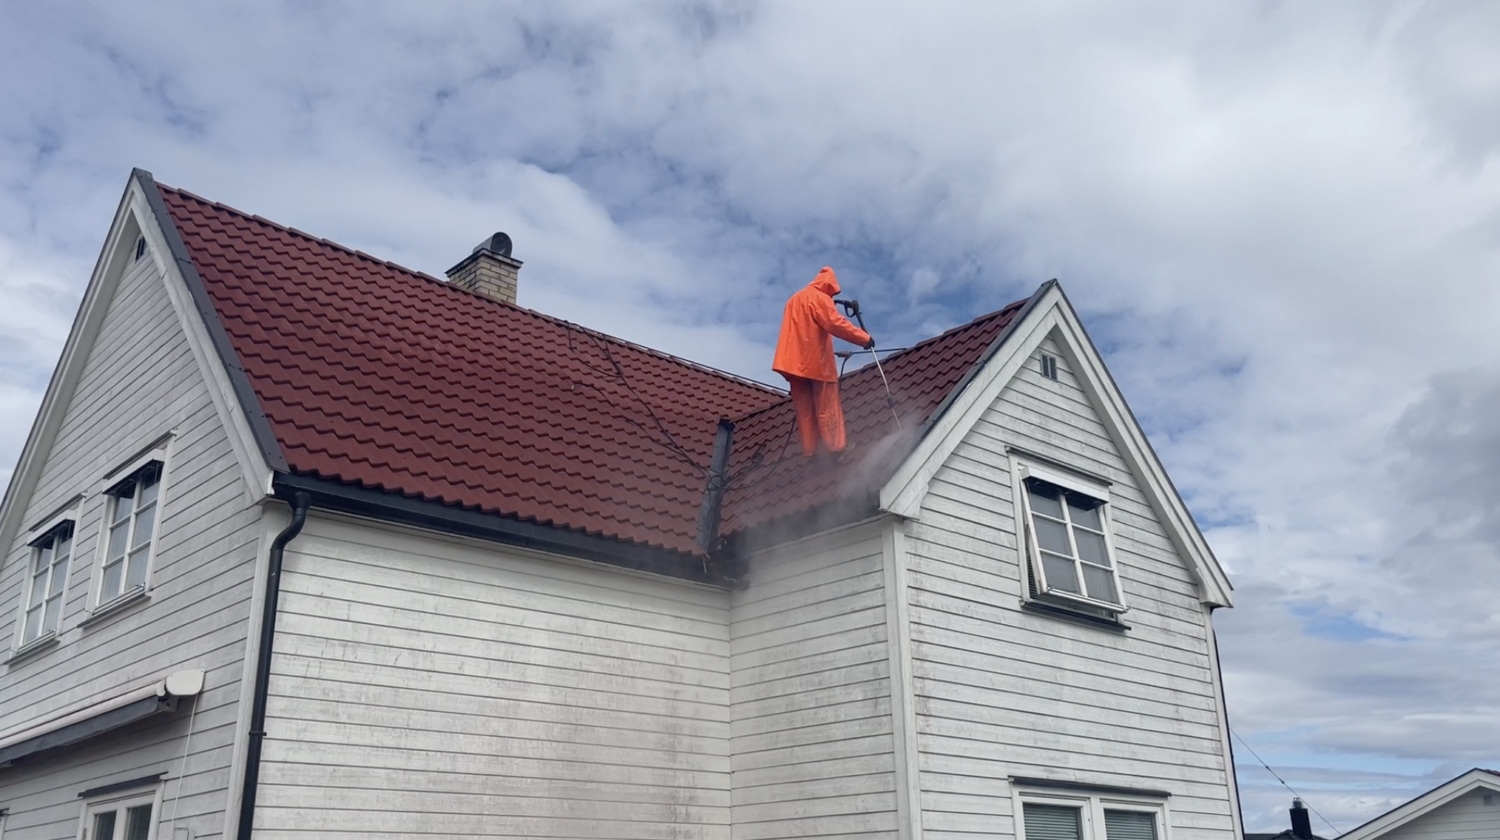 Vask av tak med høyttrykkspyler